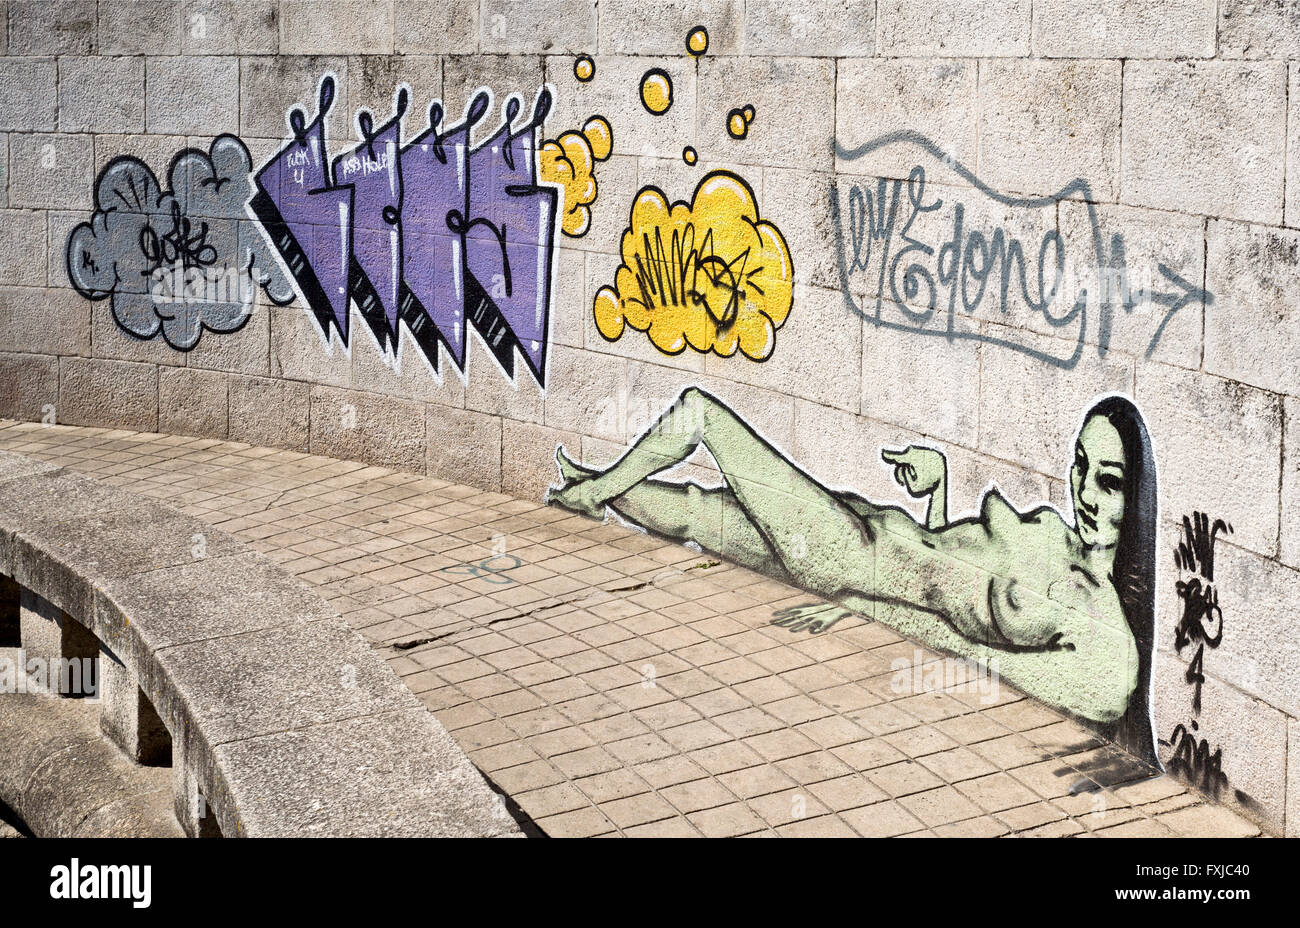 Beispiel der Street Art auf eine nicht-autorisierte öffentliche Wand in Portugal. Keine Freigabe weil die Künstler unbekannt sind. Stockfoto